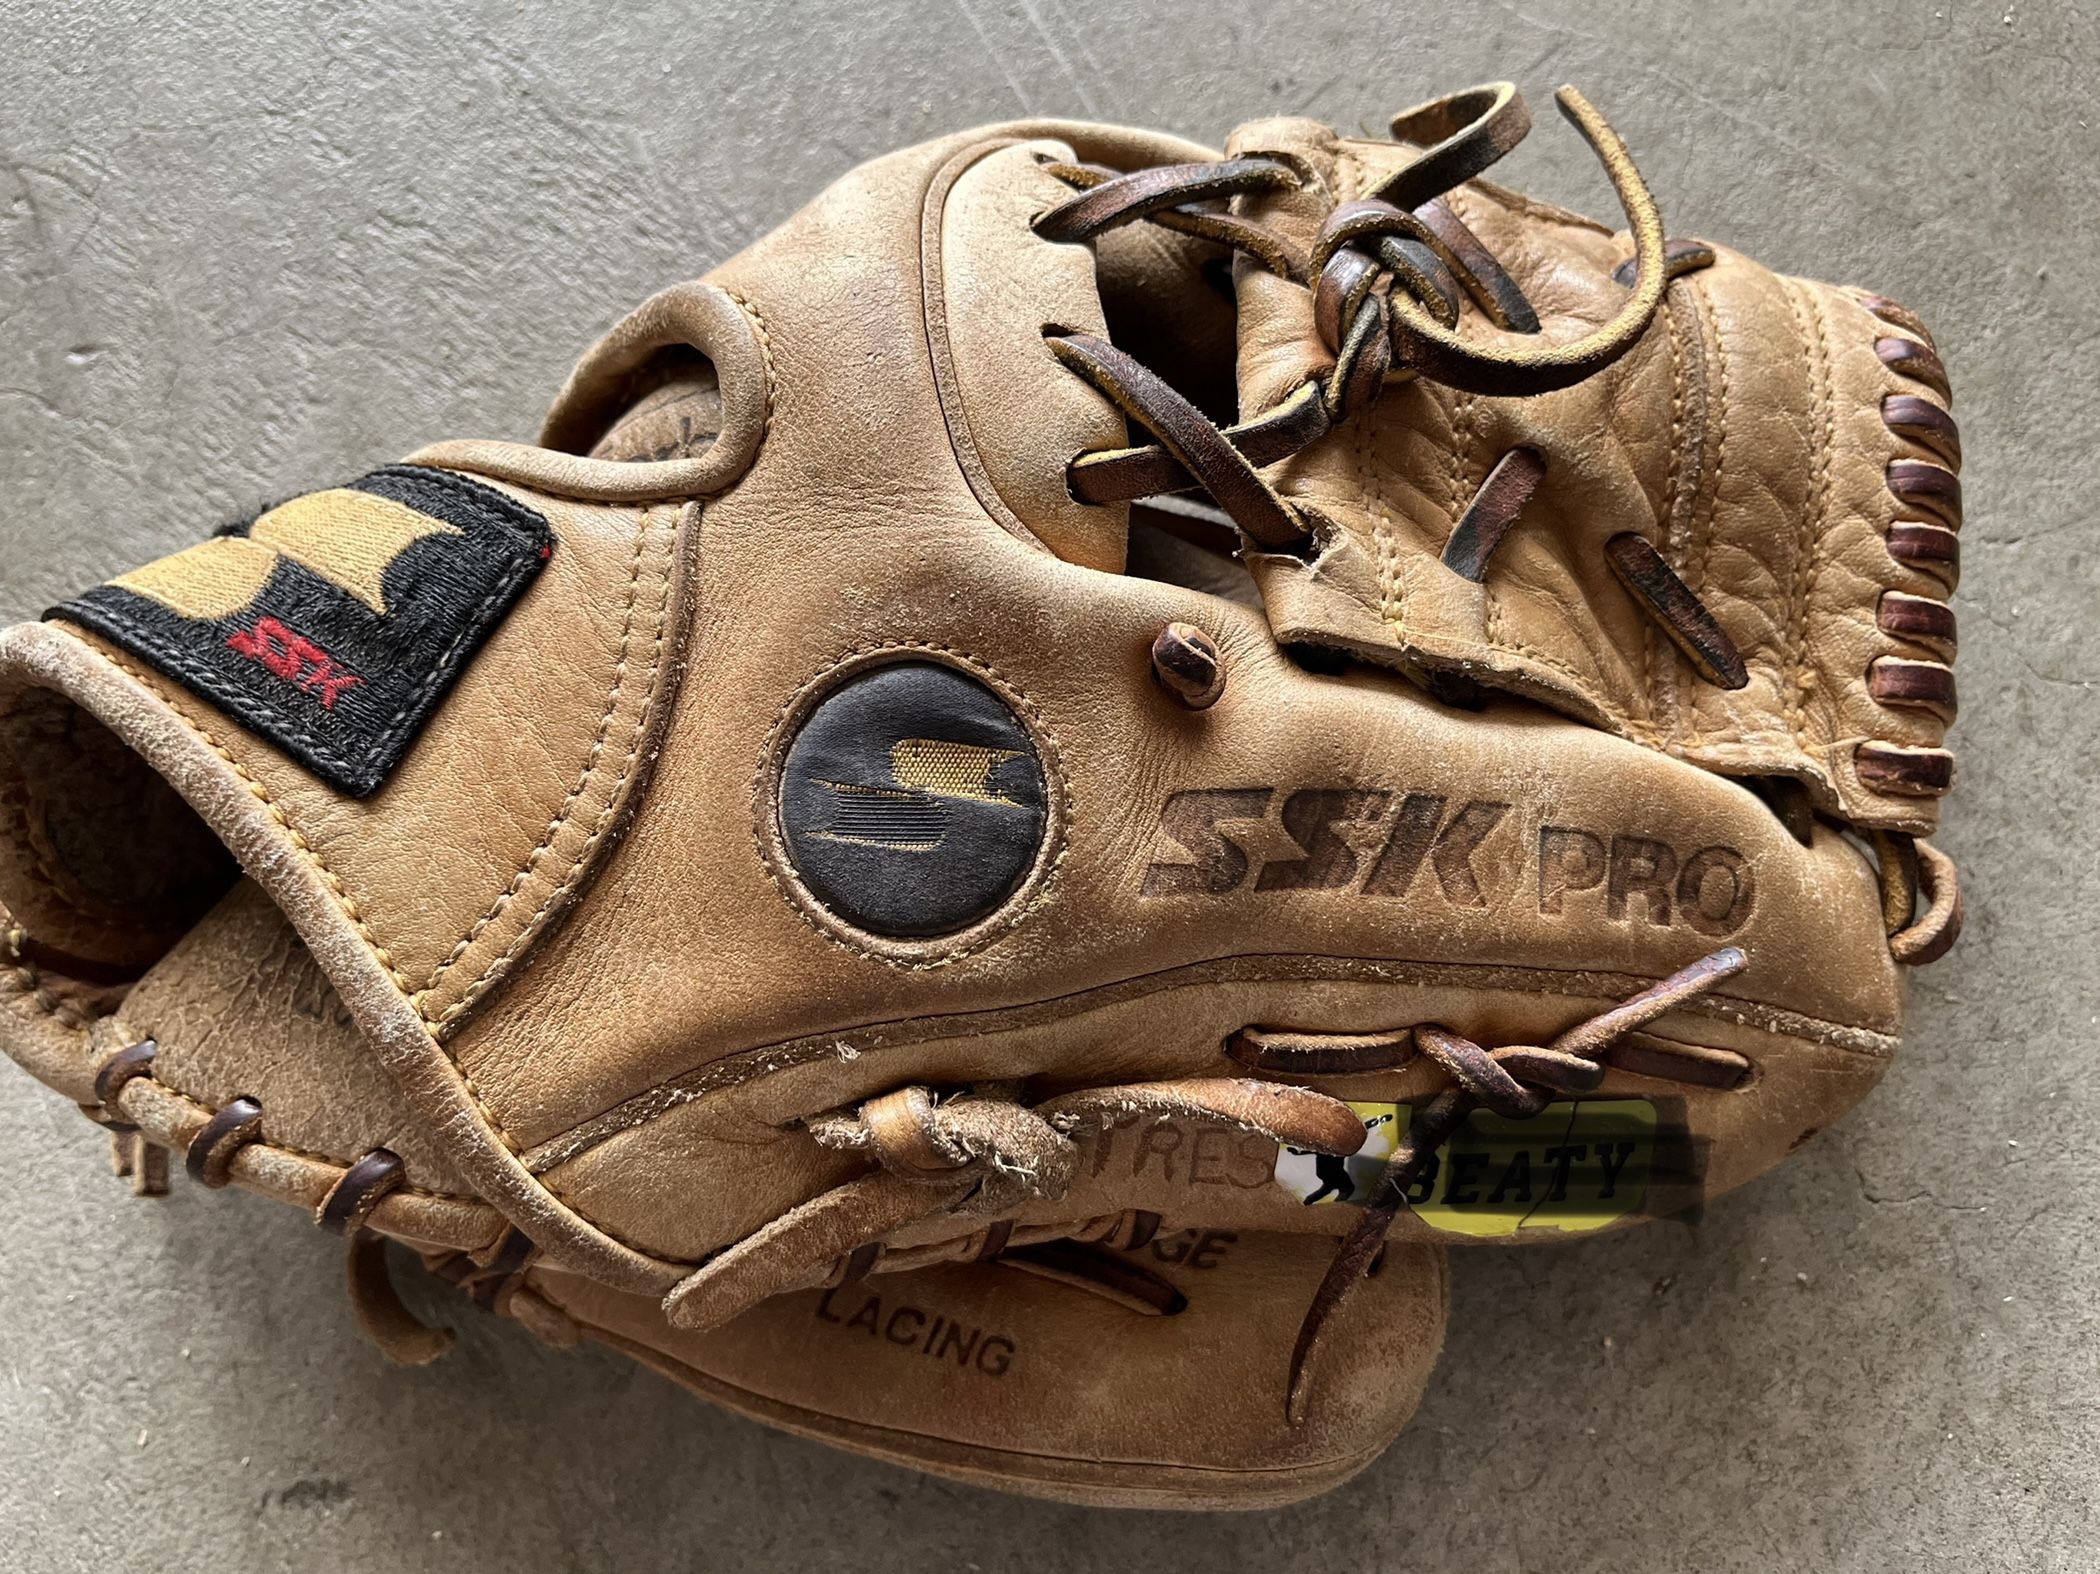 SSK Pro 11” Infielder’s Baseball Glove 